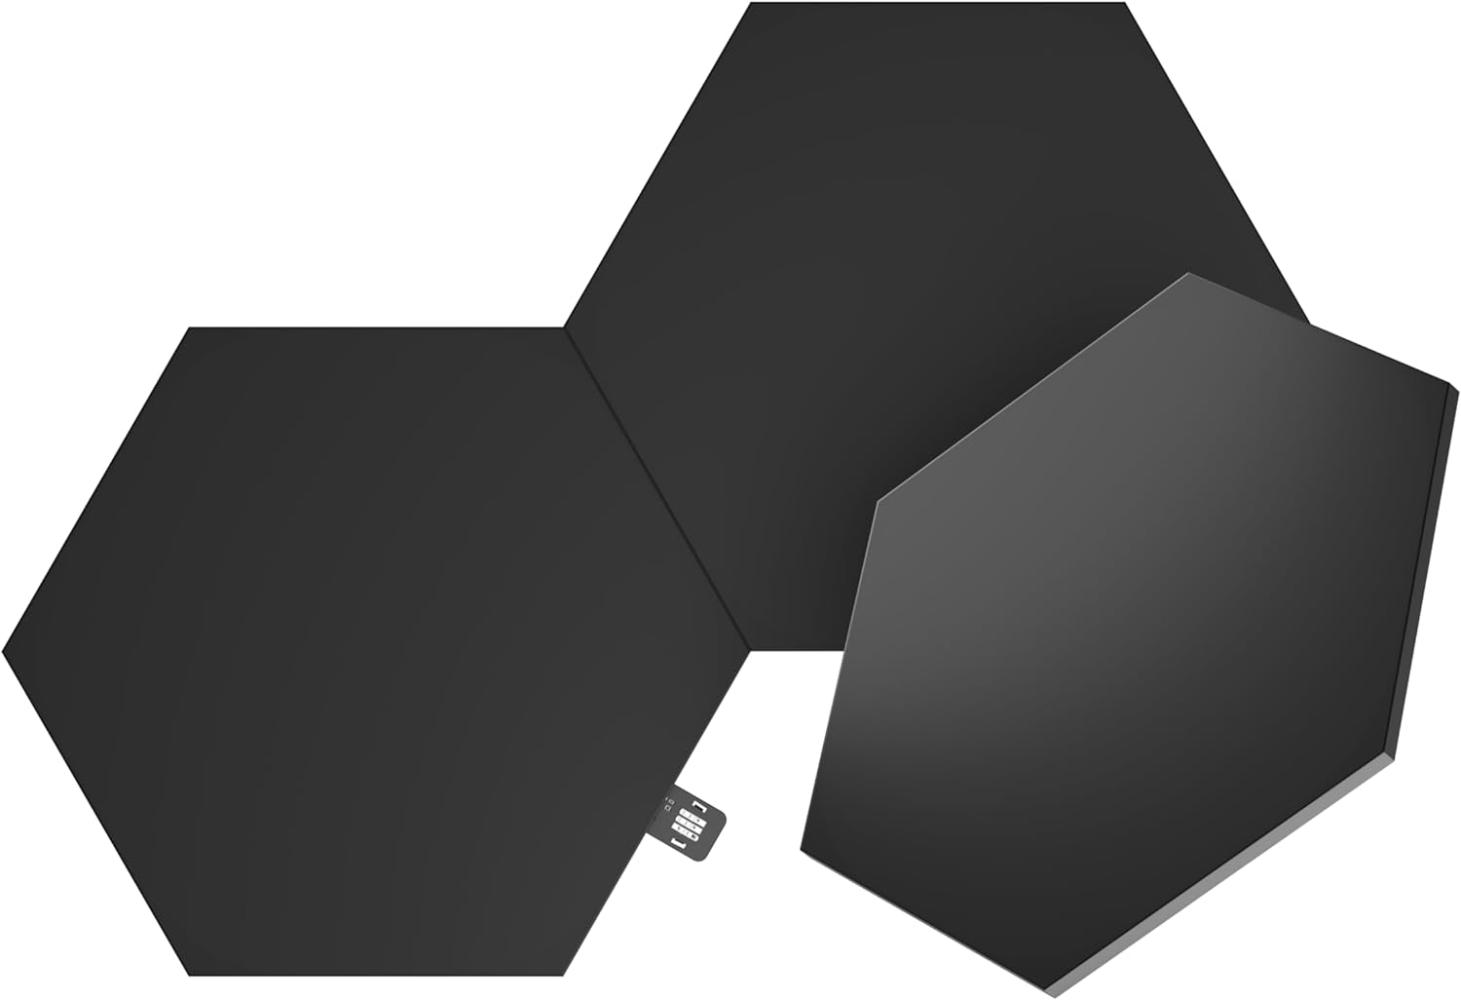 Nanoleaf Shapes Ultra Black Hexagon Erweiterungspack, 3 zusätzliche LED Panels - Smarte Modulare RGBW WLAN 16 Mio. Farben Wandleuchte Innen, Musik & Bildschirm Sync, Funktioniert mit Alexa Bild 1